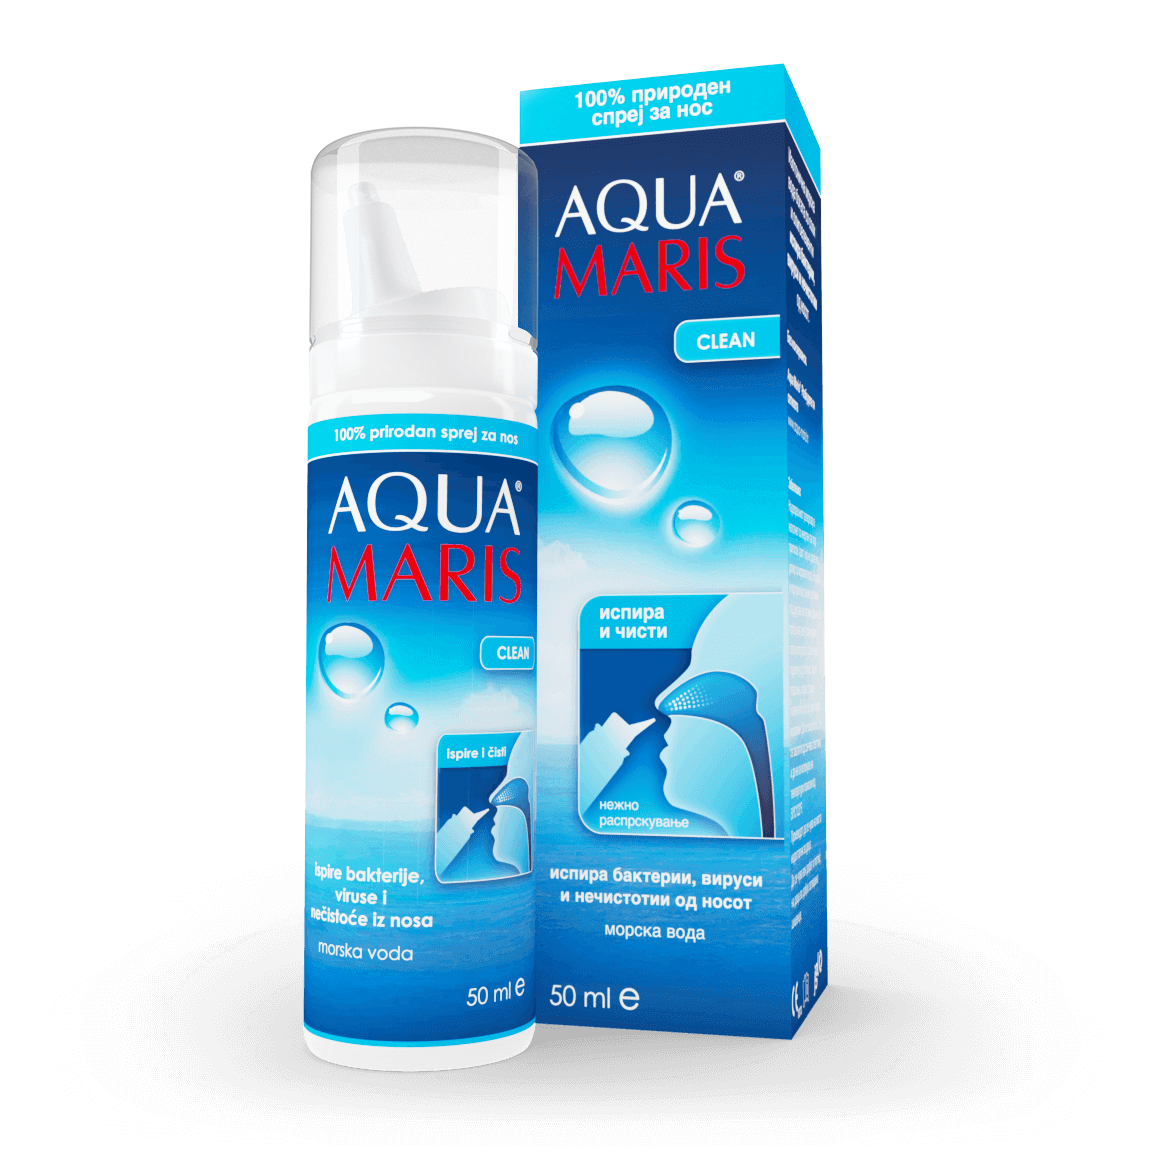 Aqua Maris Clean